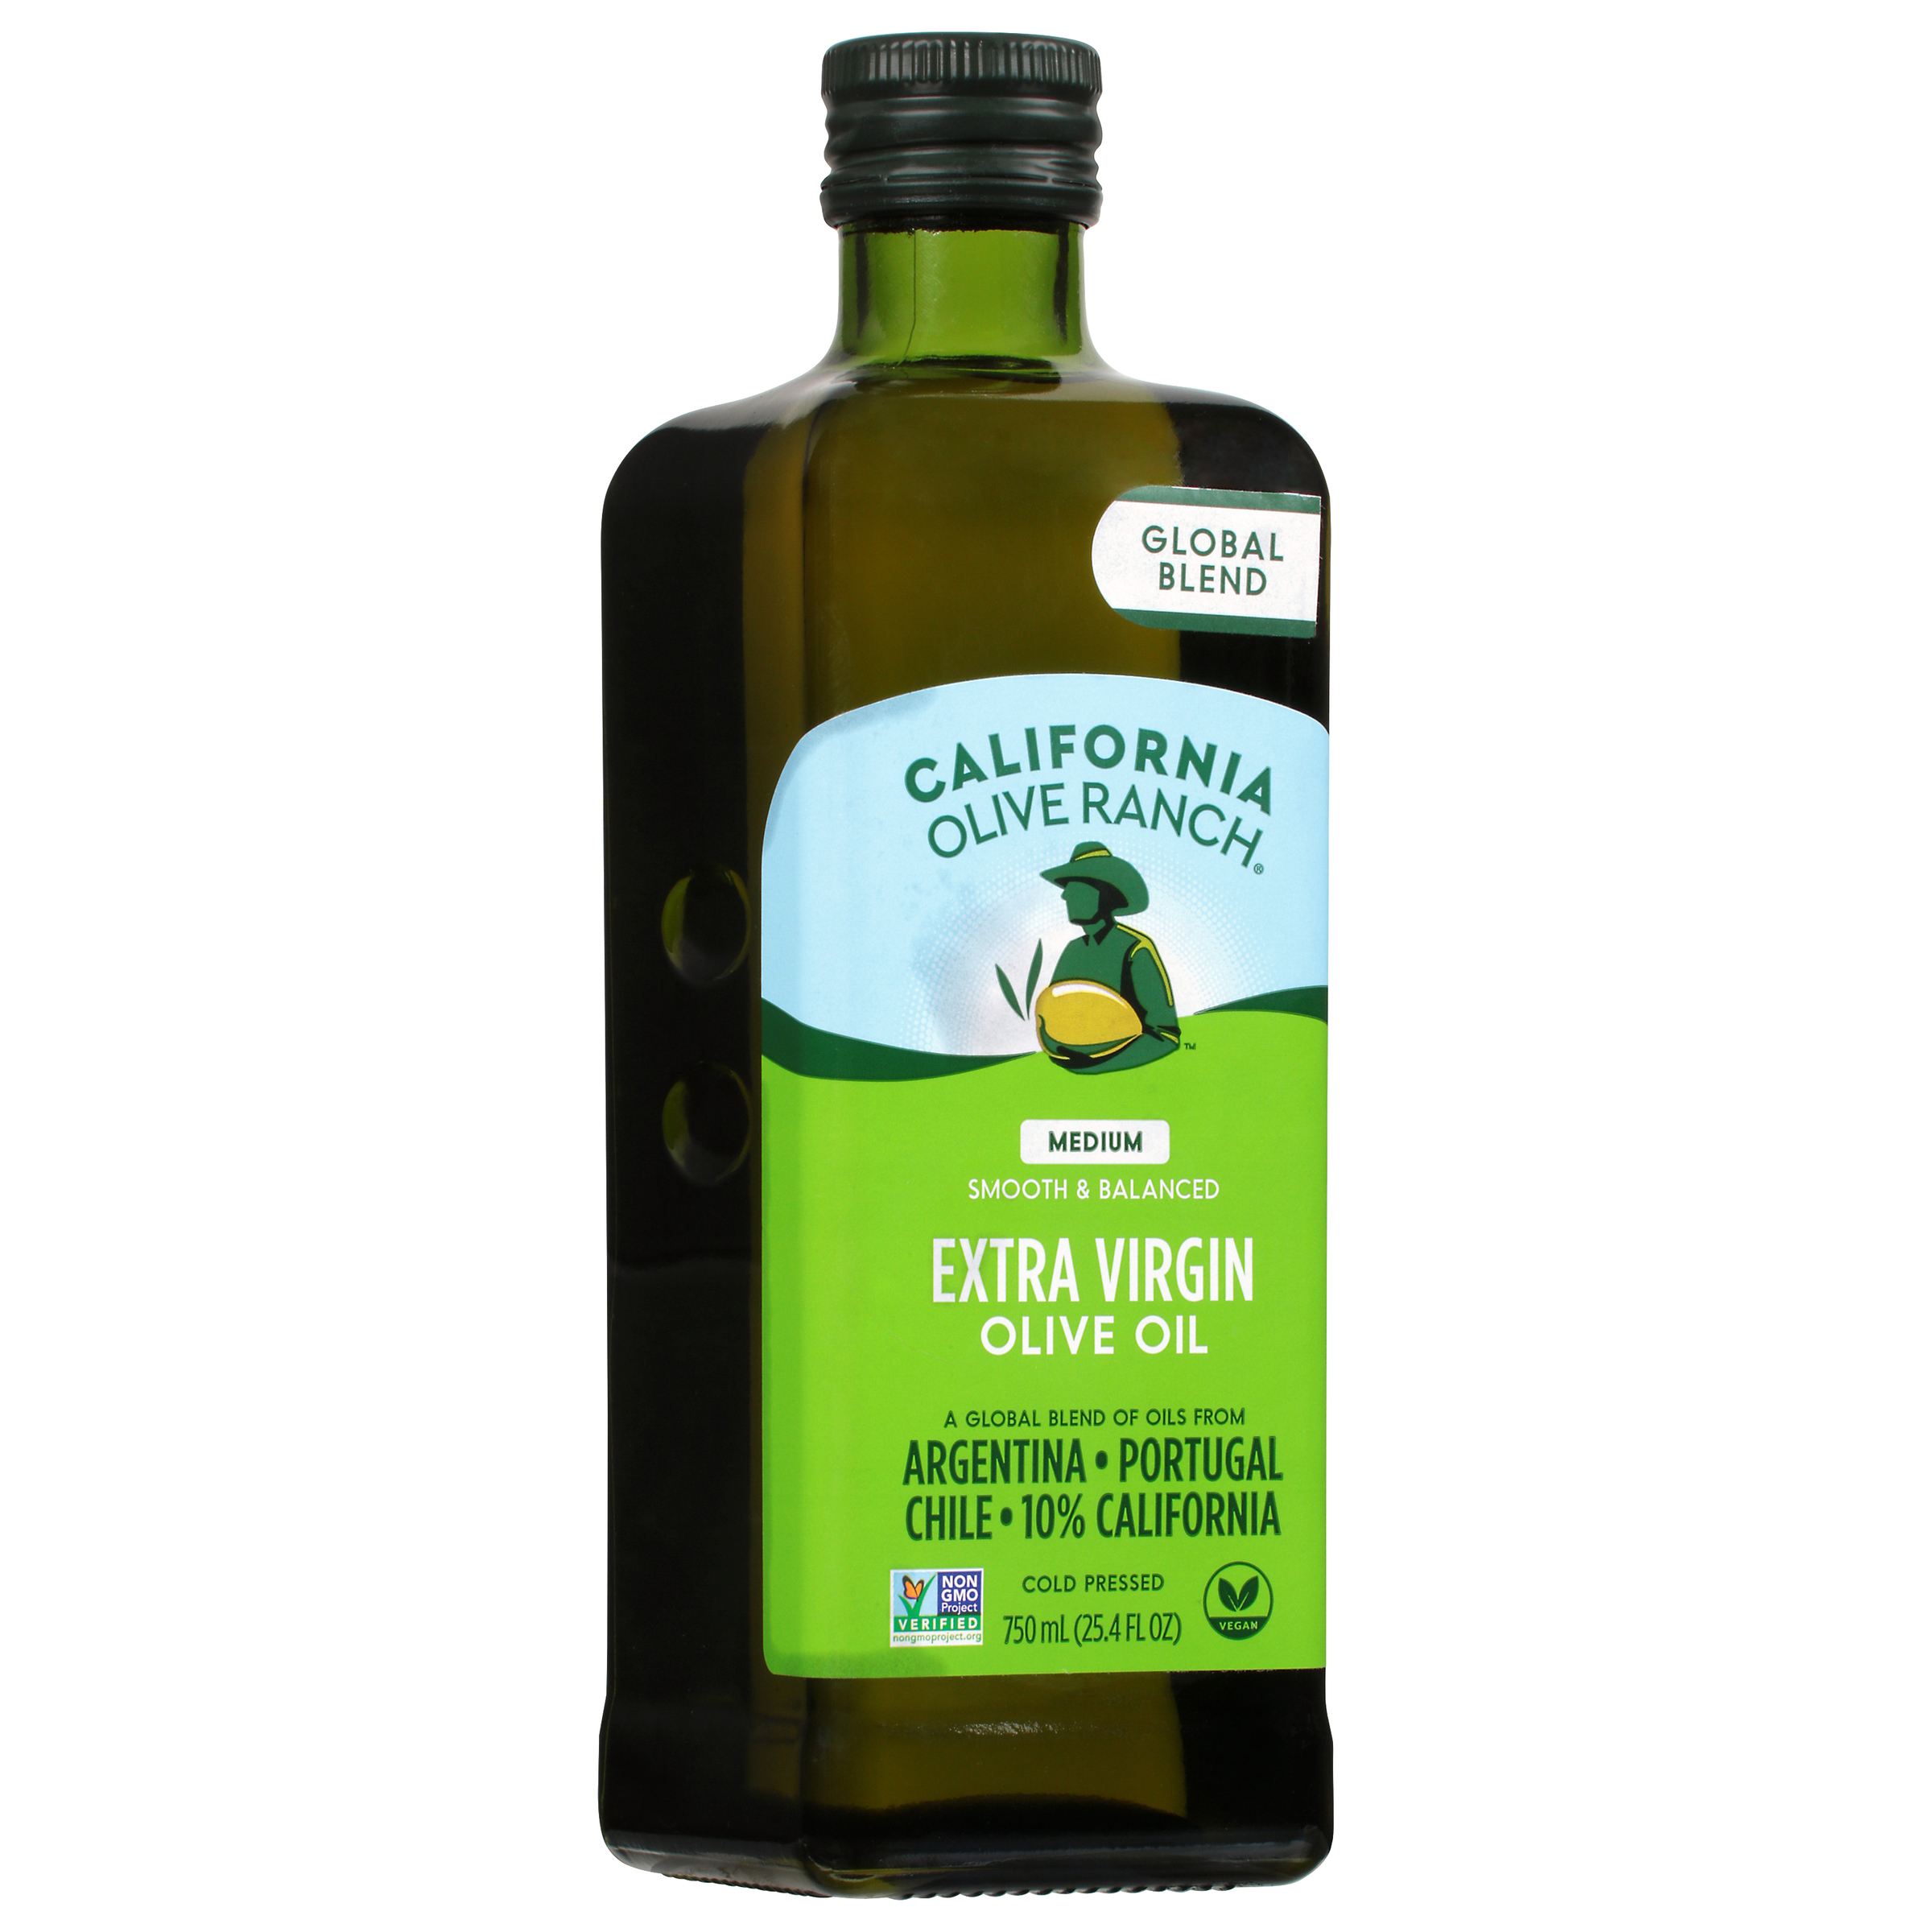 California Olive Ranch Global Blend Extra Virgin Olive Oil, Medium, 25.4 fl oz - image 4 of 7